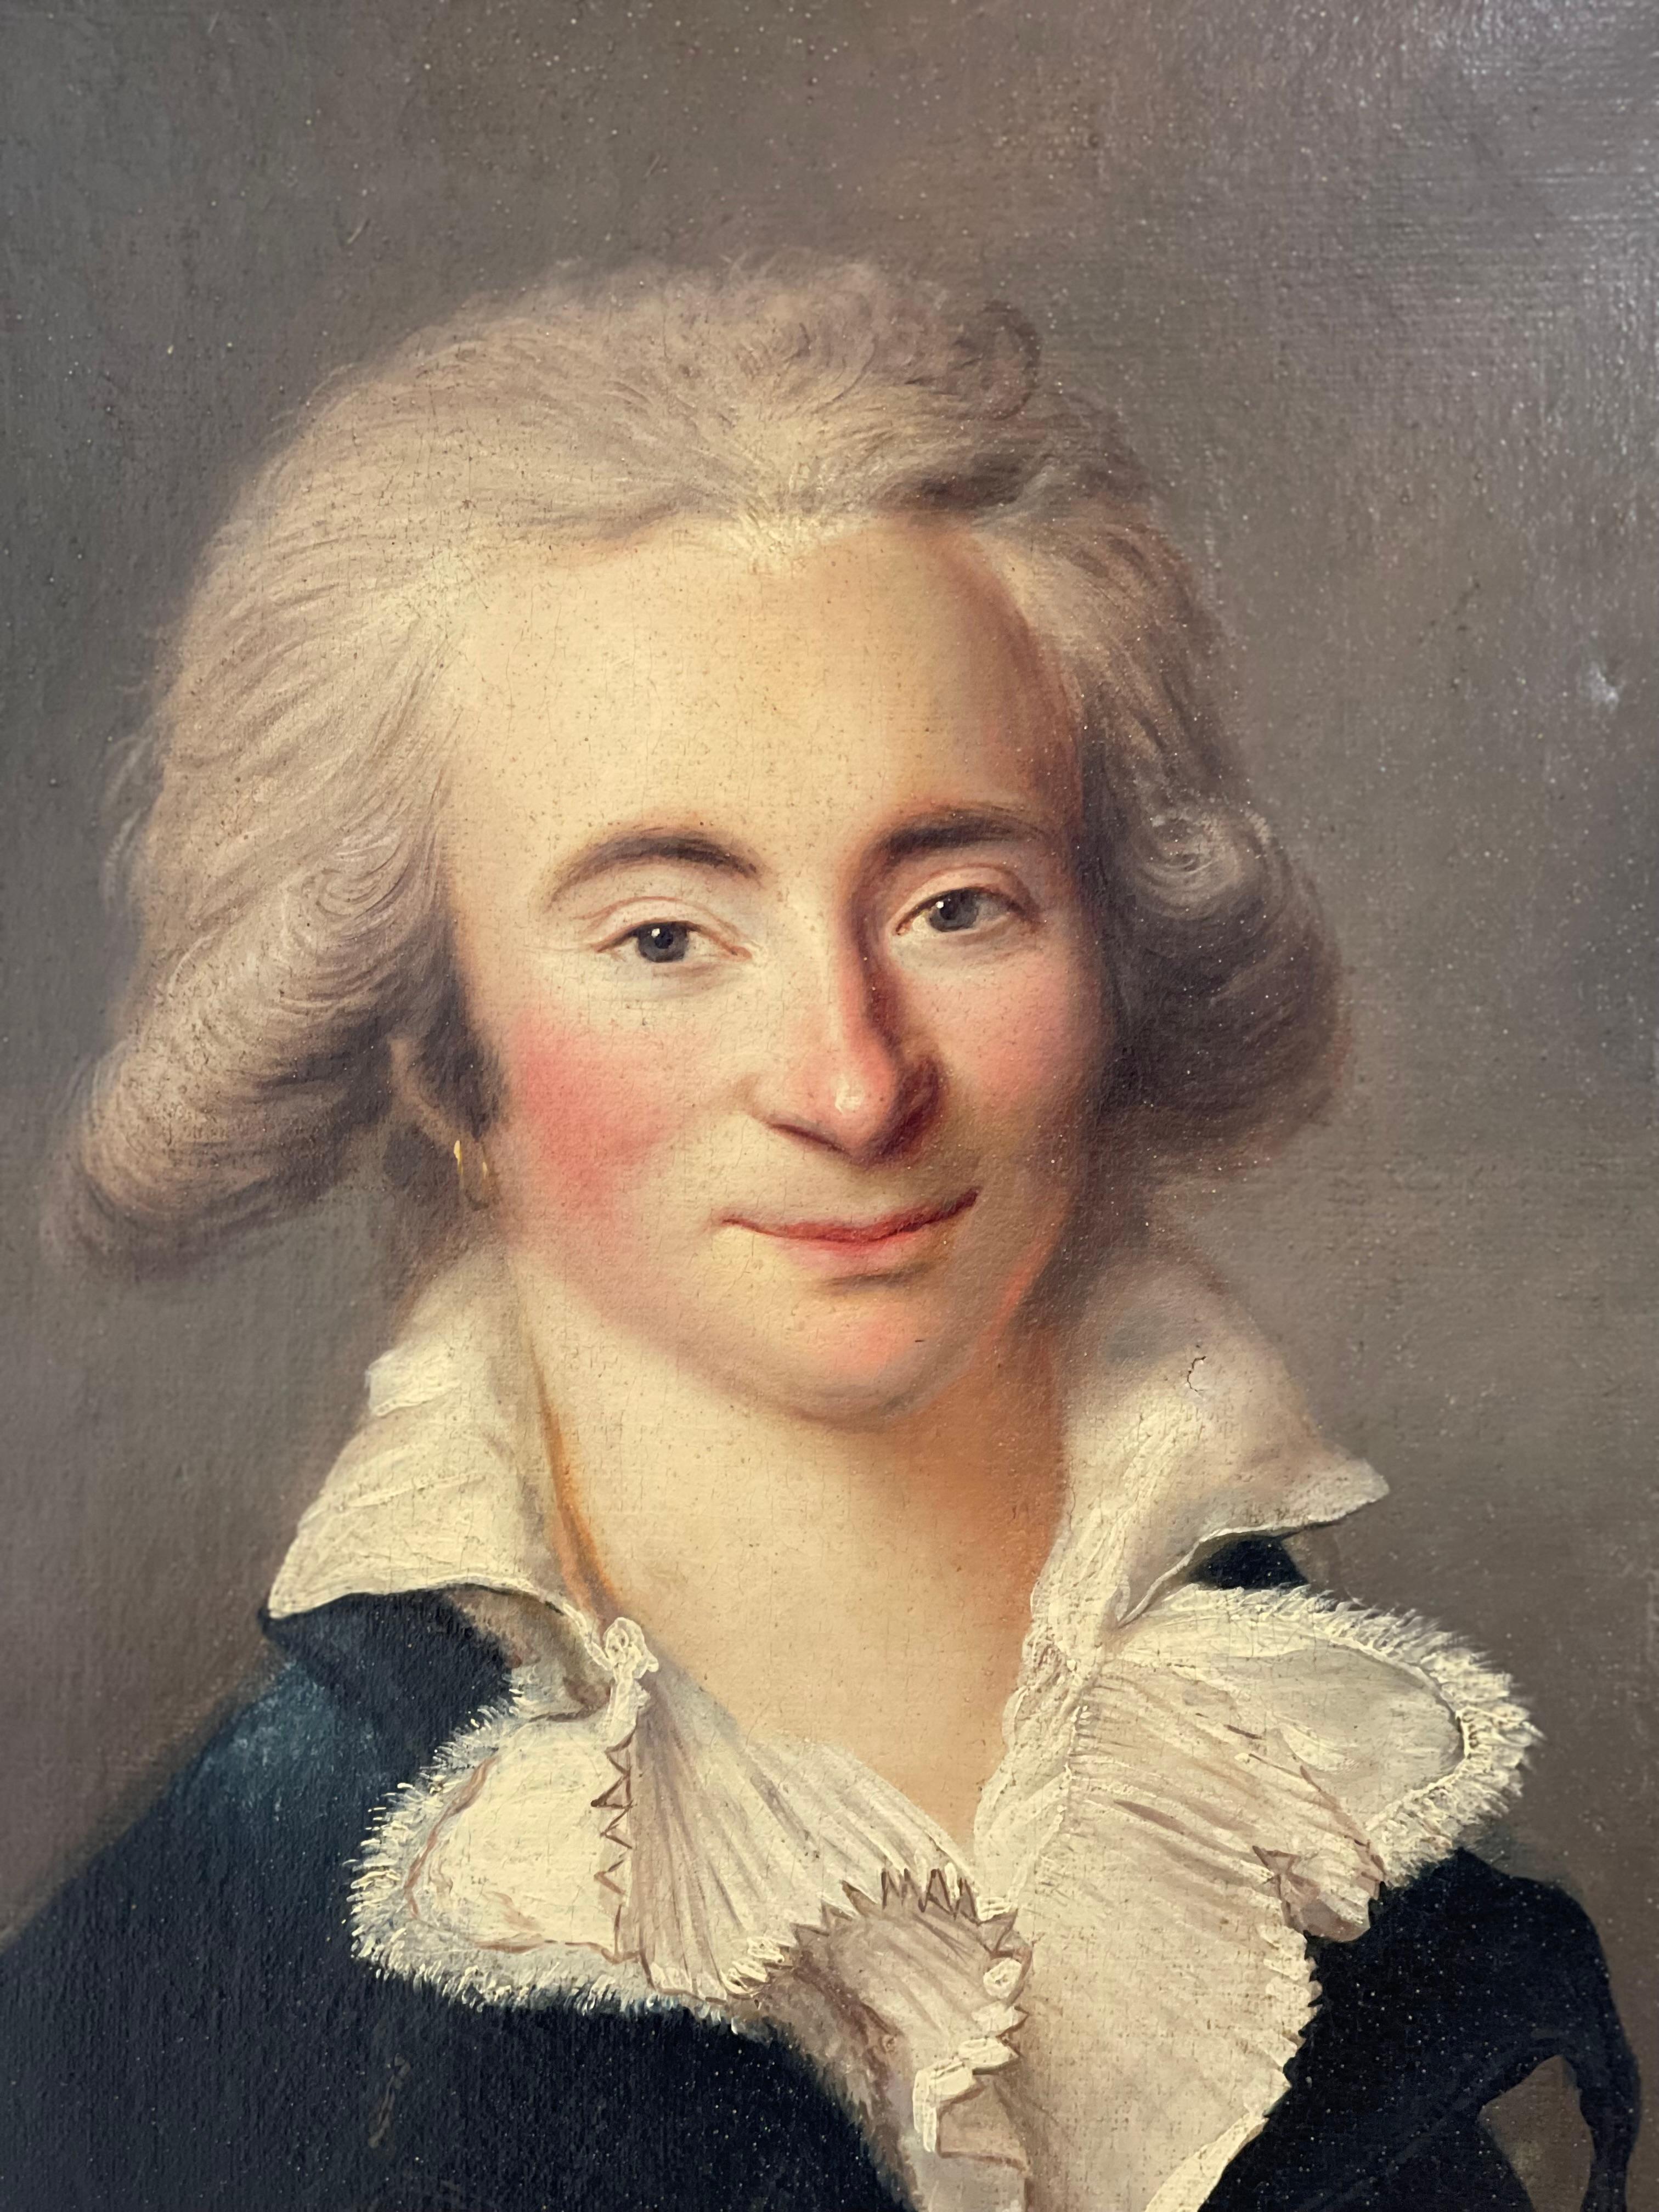 18. Jahrhundert Oval Porträt Öl auf Leinwand eines Aristokraten

Die Person mit dem verschmitzten Blick trägt eine sehr voluminöse, gepuderte Hochsteckfrisur.
Ein Ohrring an seinem Ohr ist ein seltenes Beispiel für Koketterie auf einem